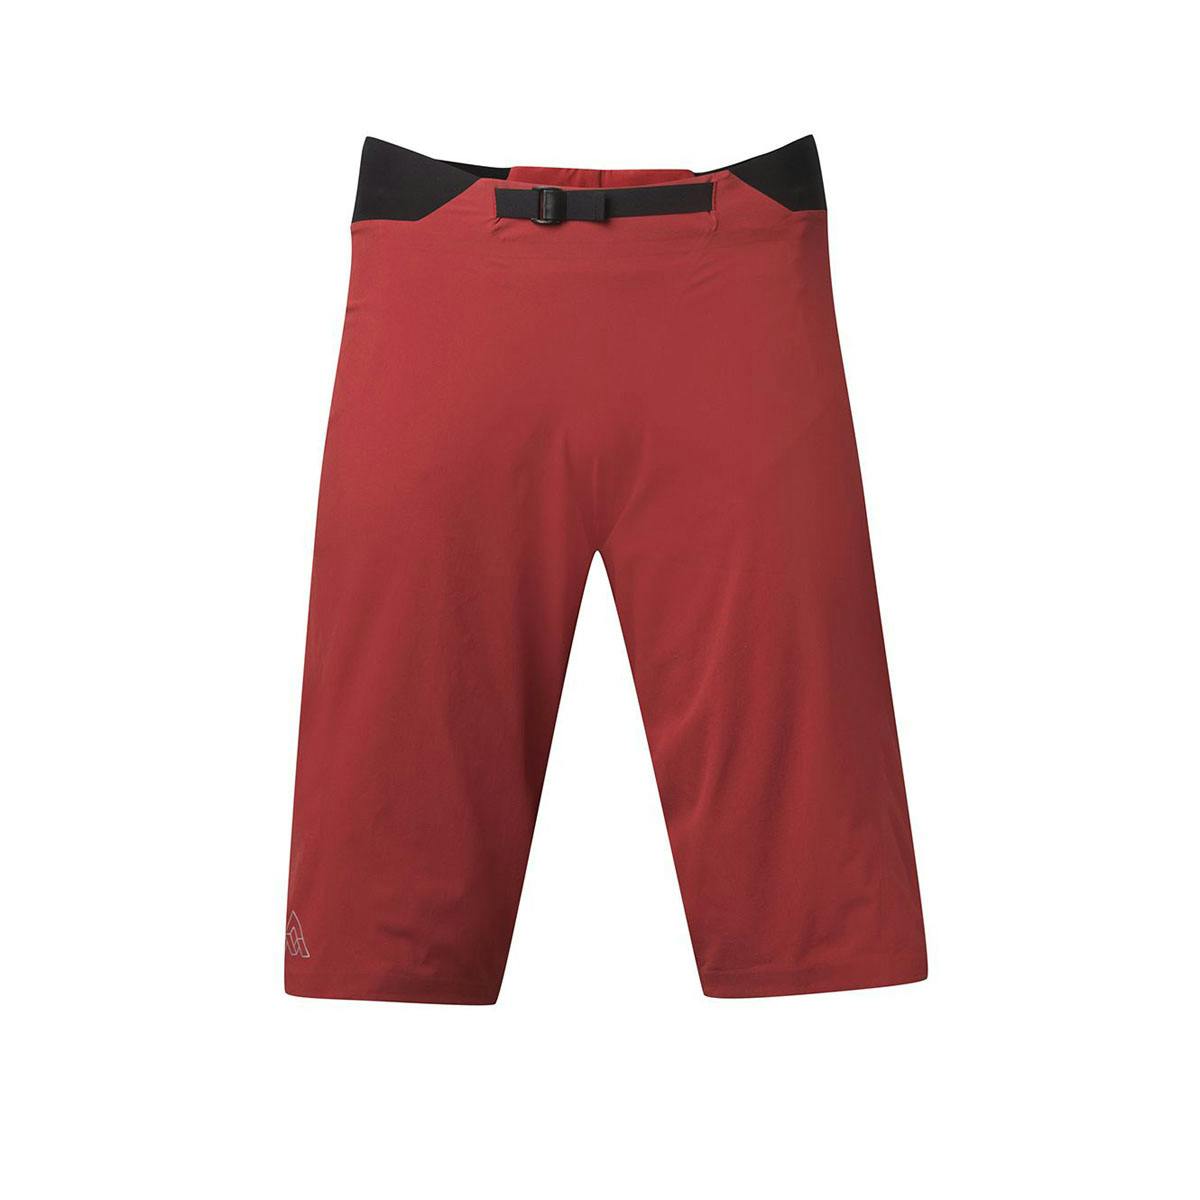 7Mesh Slab Men's Shorts - Grateful Red - Large